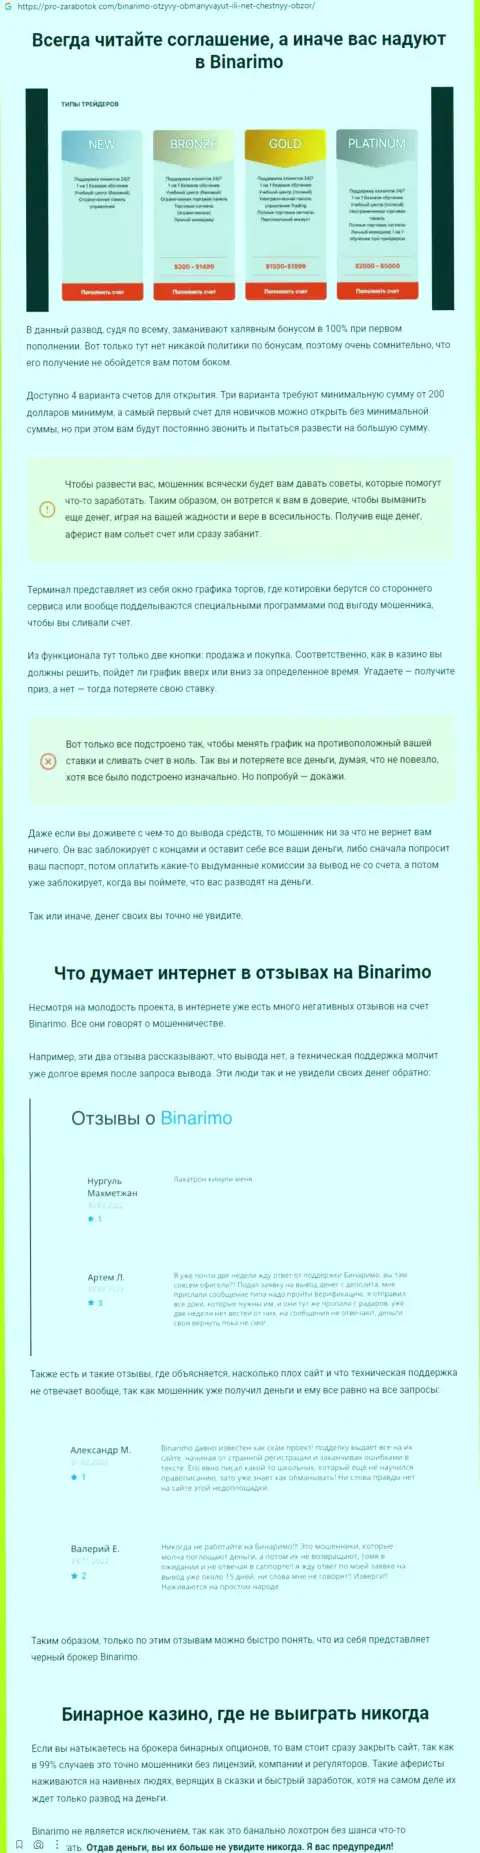 Binarimo - это мошенники, которым финансовые средства отправлять не надо ни при каких обстоятельствах (обзор неправомерных деяний)